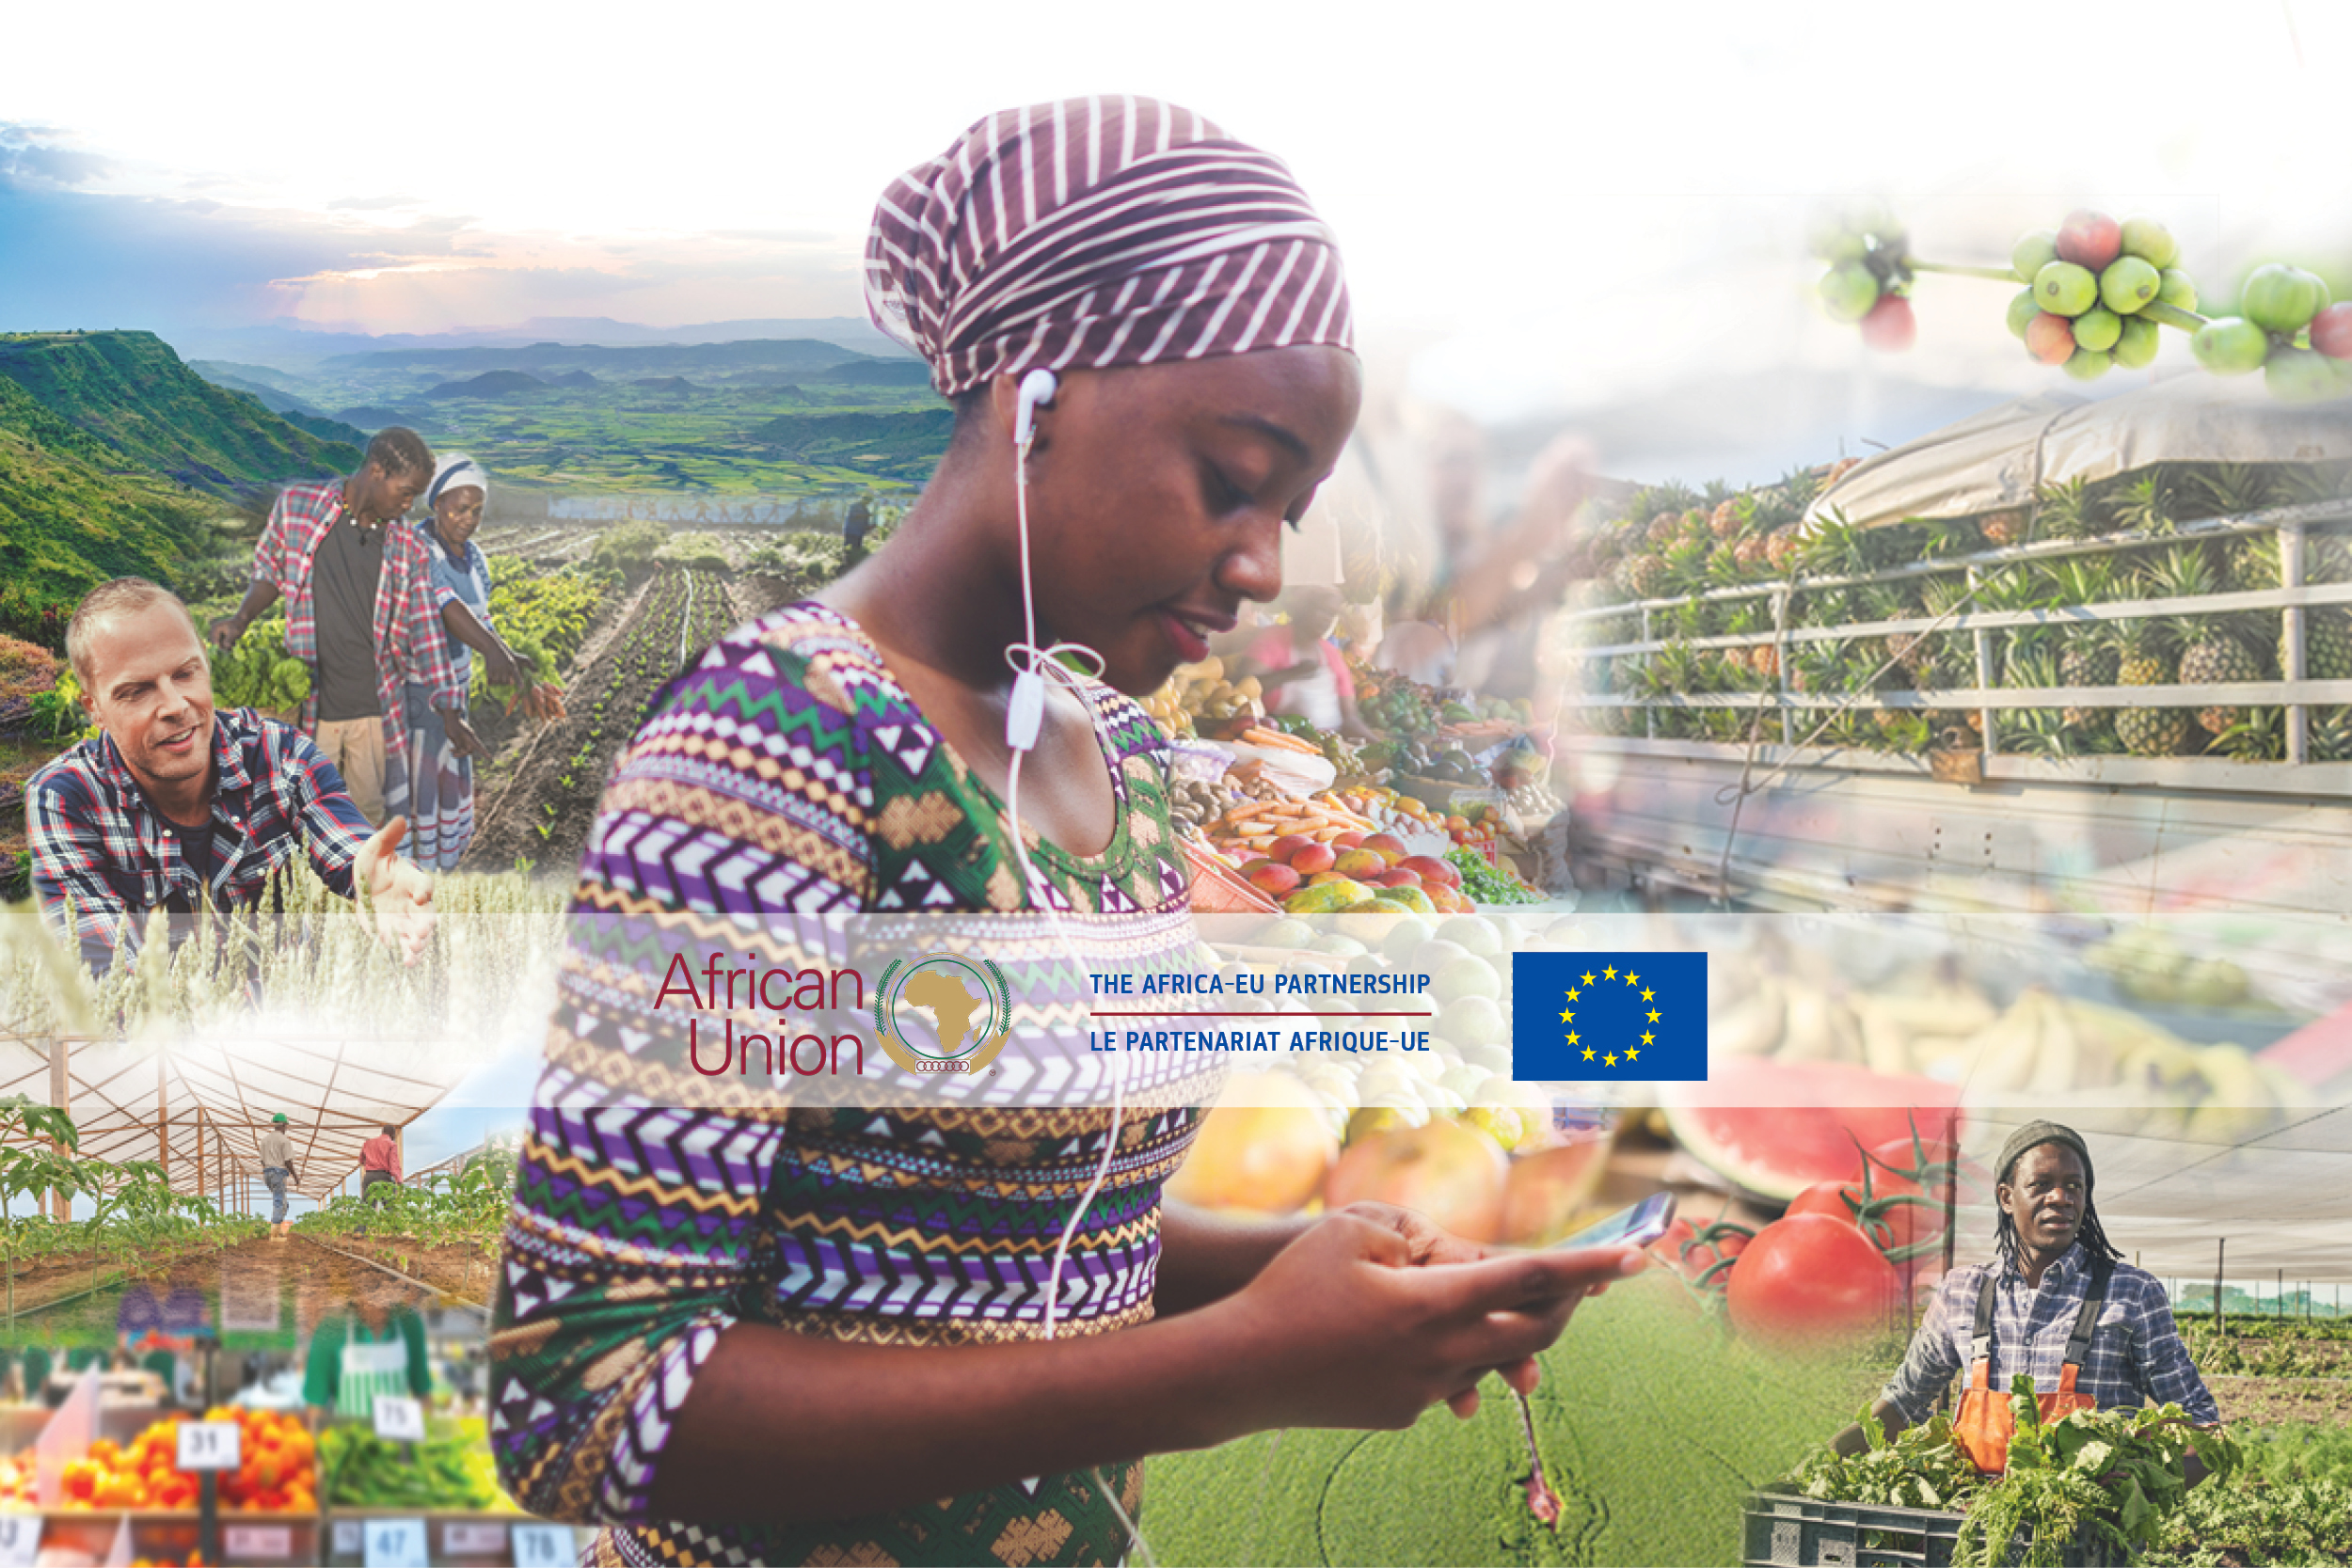 The African-EU Partnership